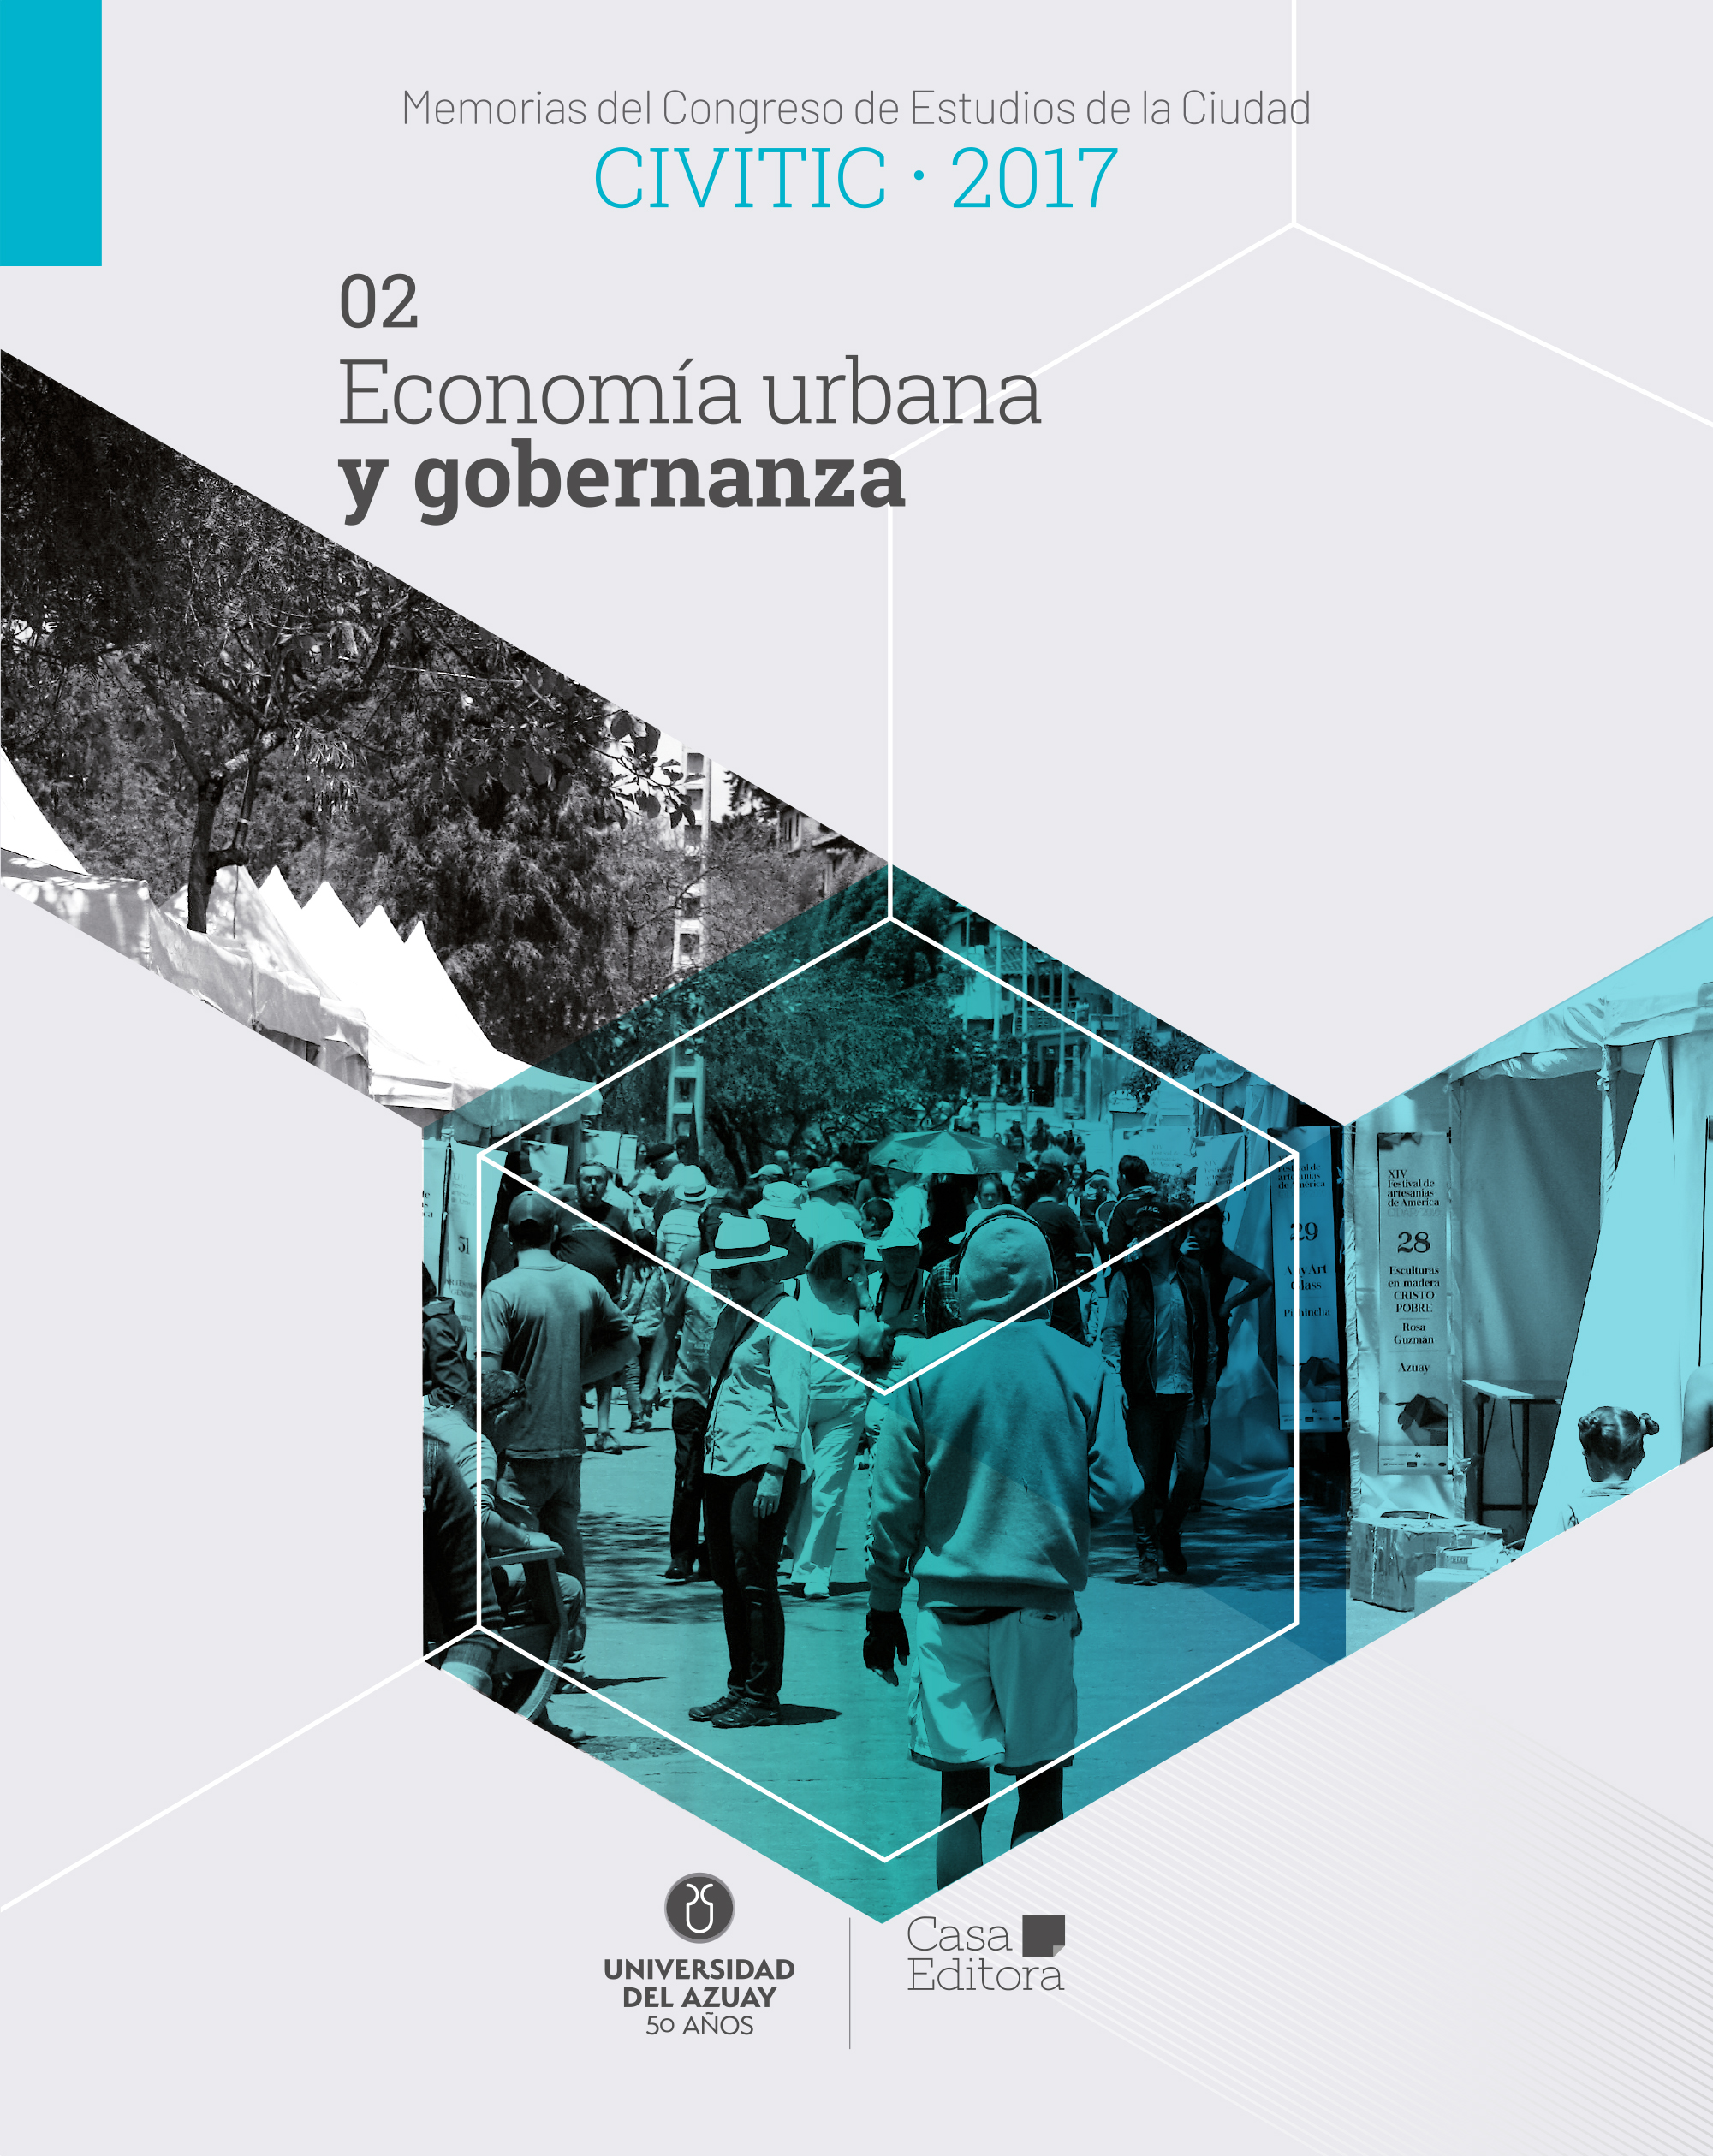 					Visualizza Memorias del Congreso de Estudios de la Ciudad CIVITIC 2017 - Economía urbana y gobernanza
				